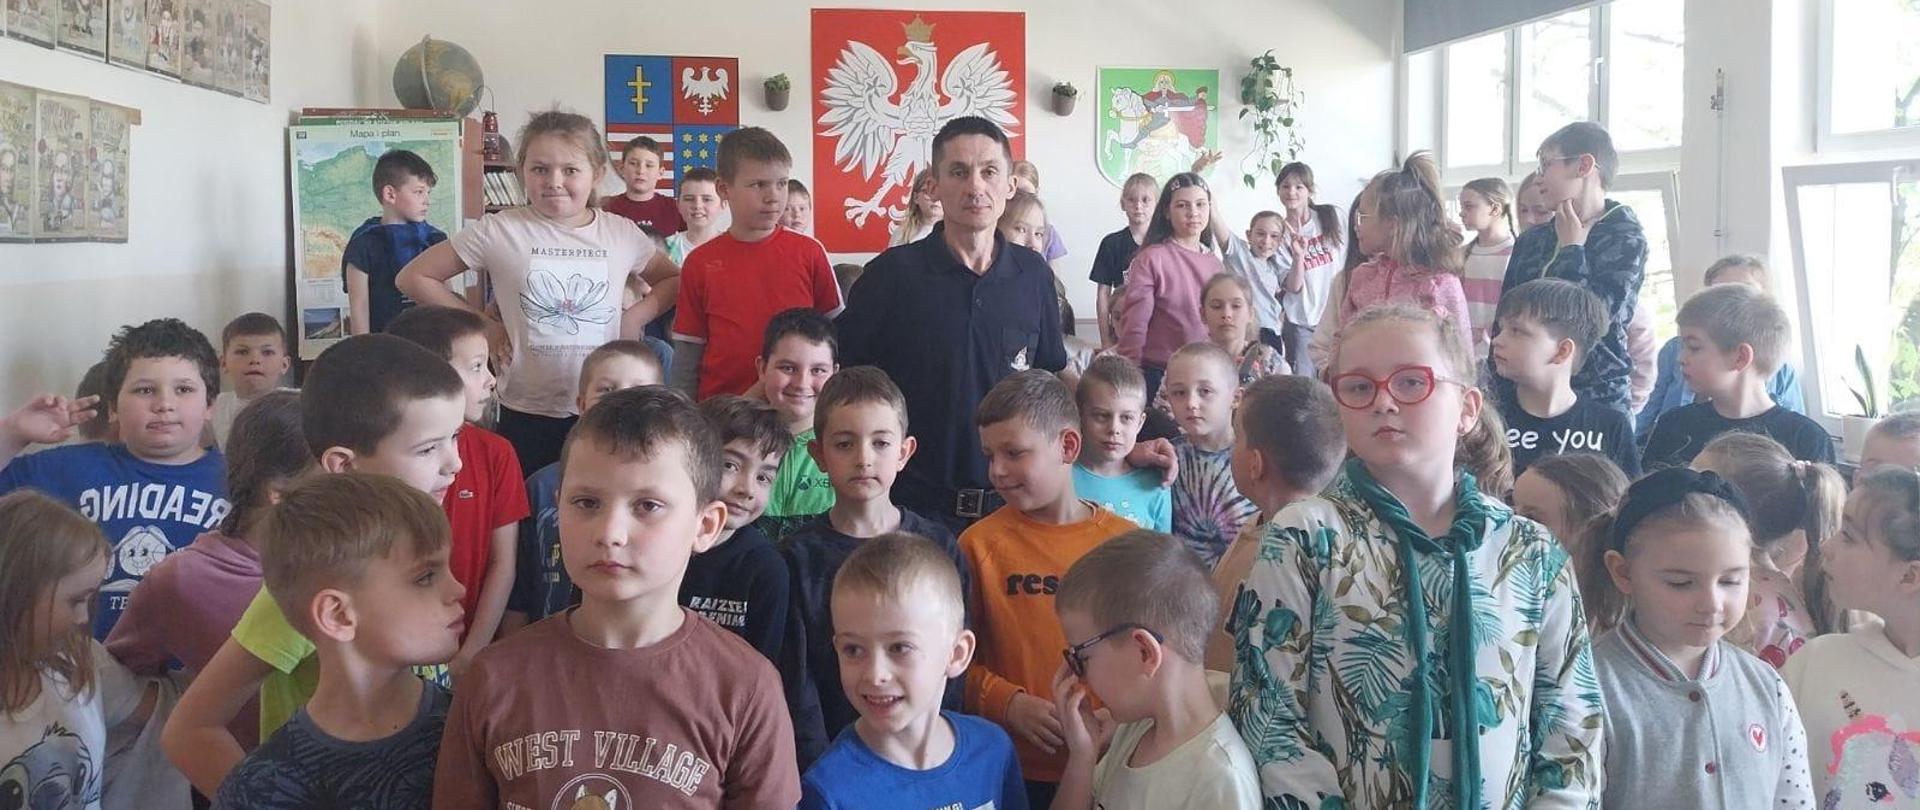 Zdjęcie grupowe dzieci i strażaka na tle godła polski